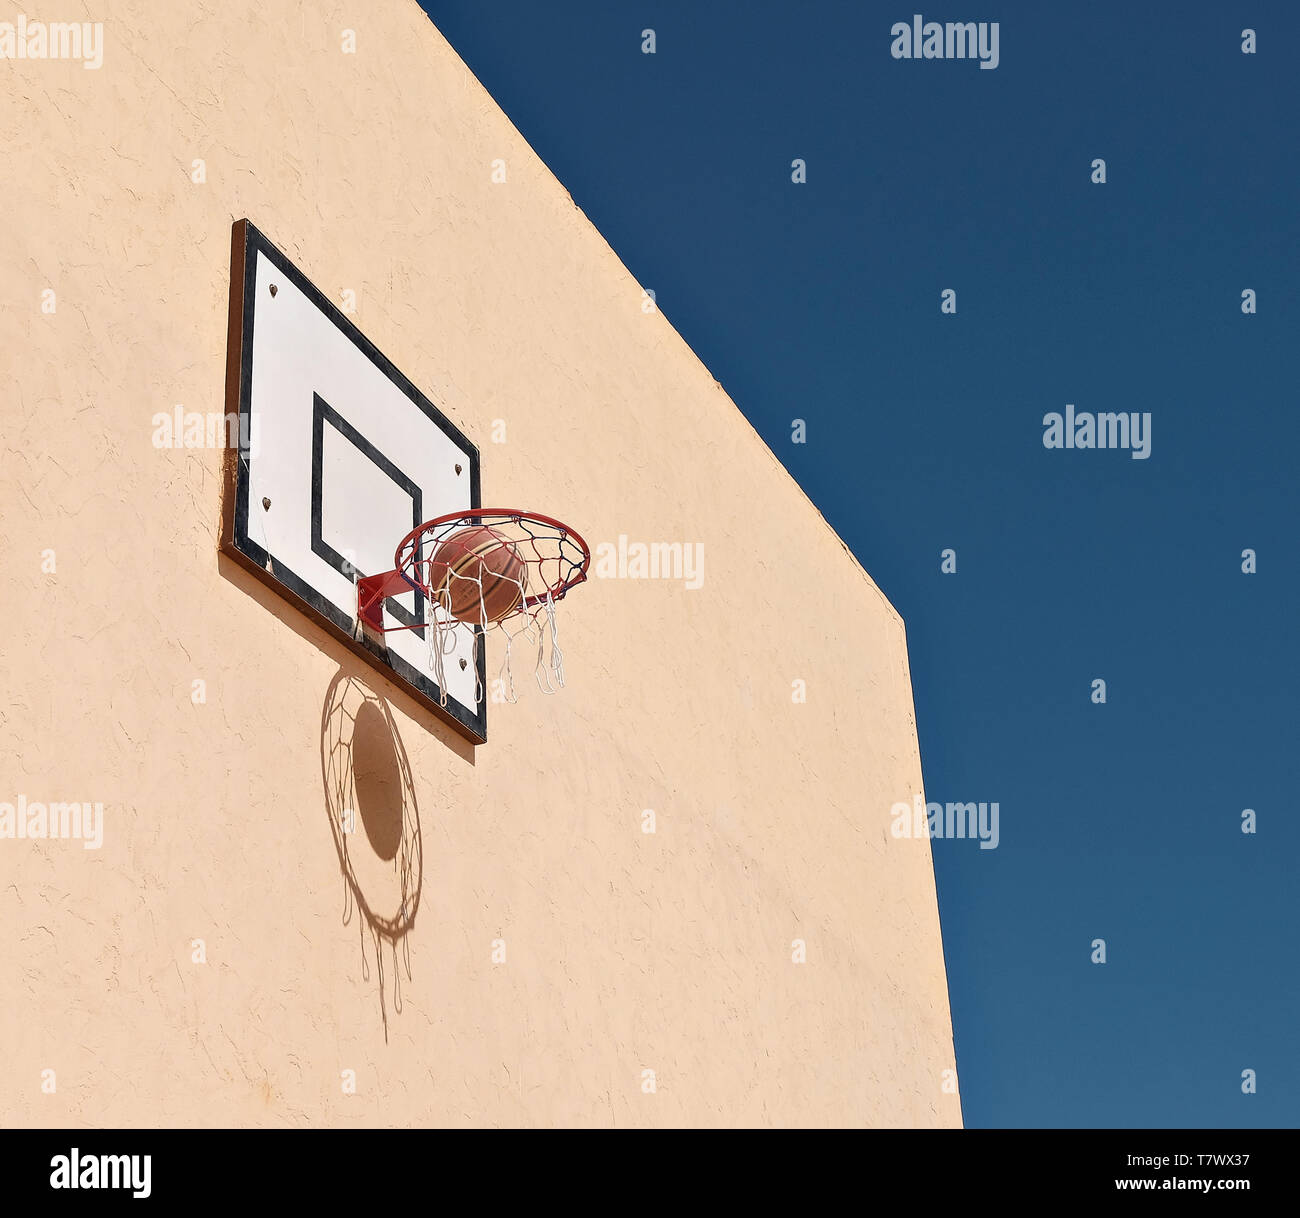 En basket-ball Basket-ball contre mur jaune. La balle et net crée une ombre sur le mur. Banque D'Images